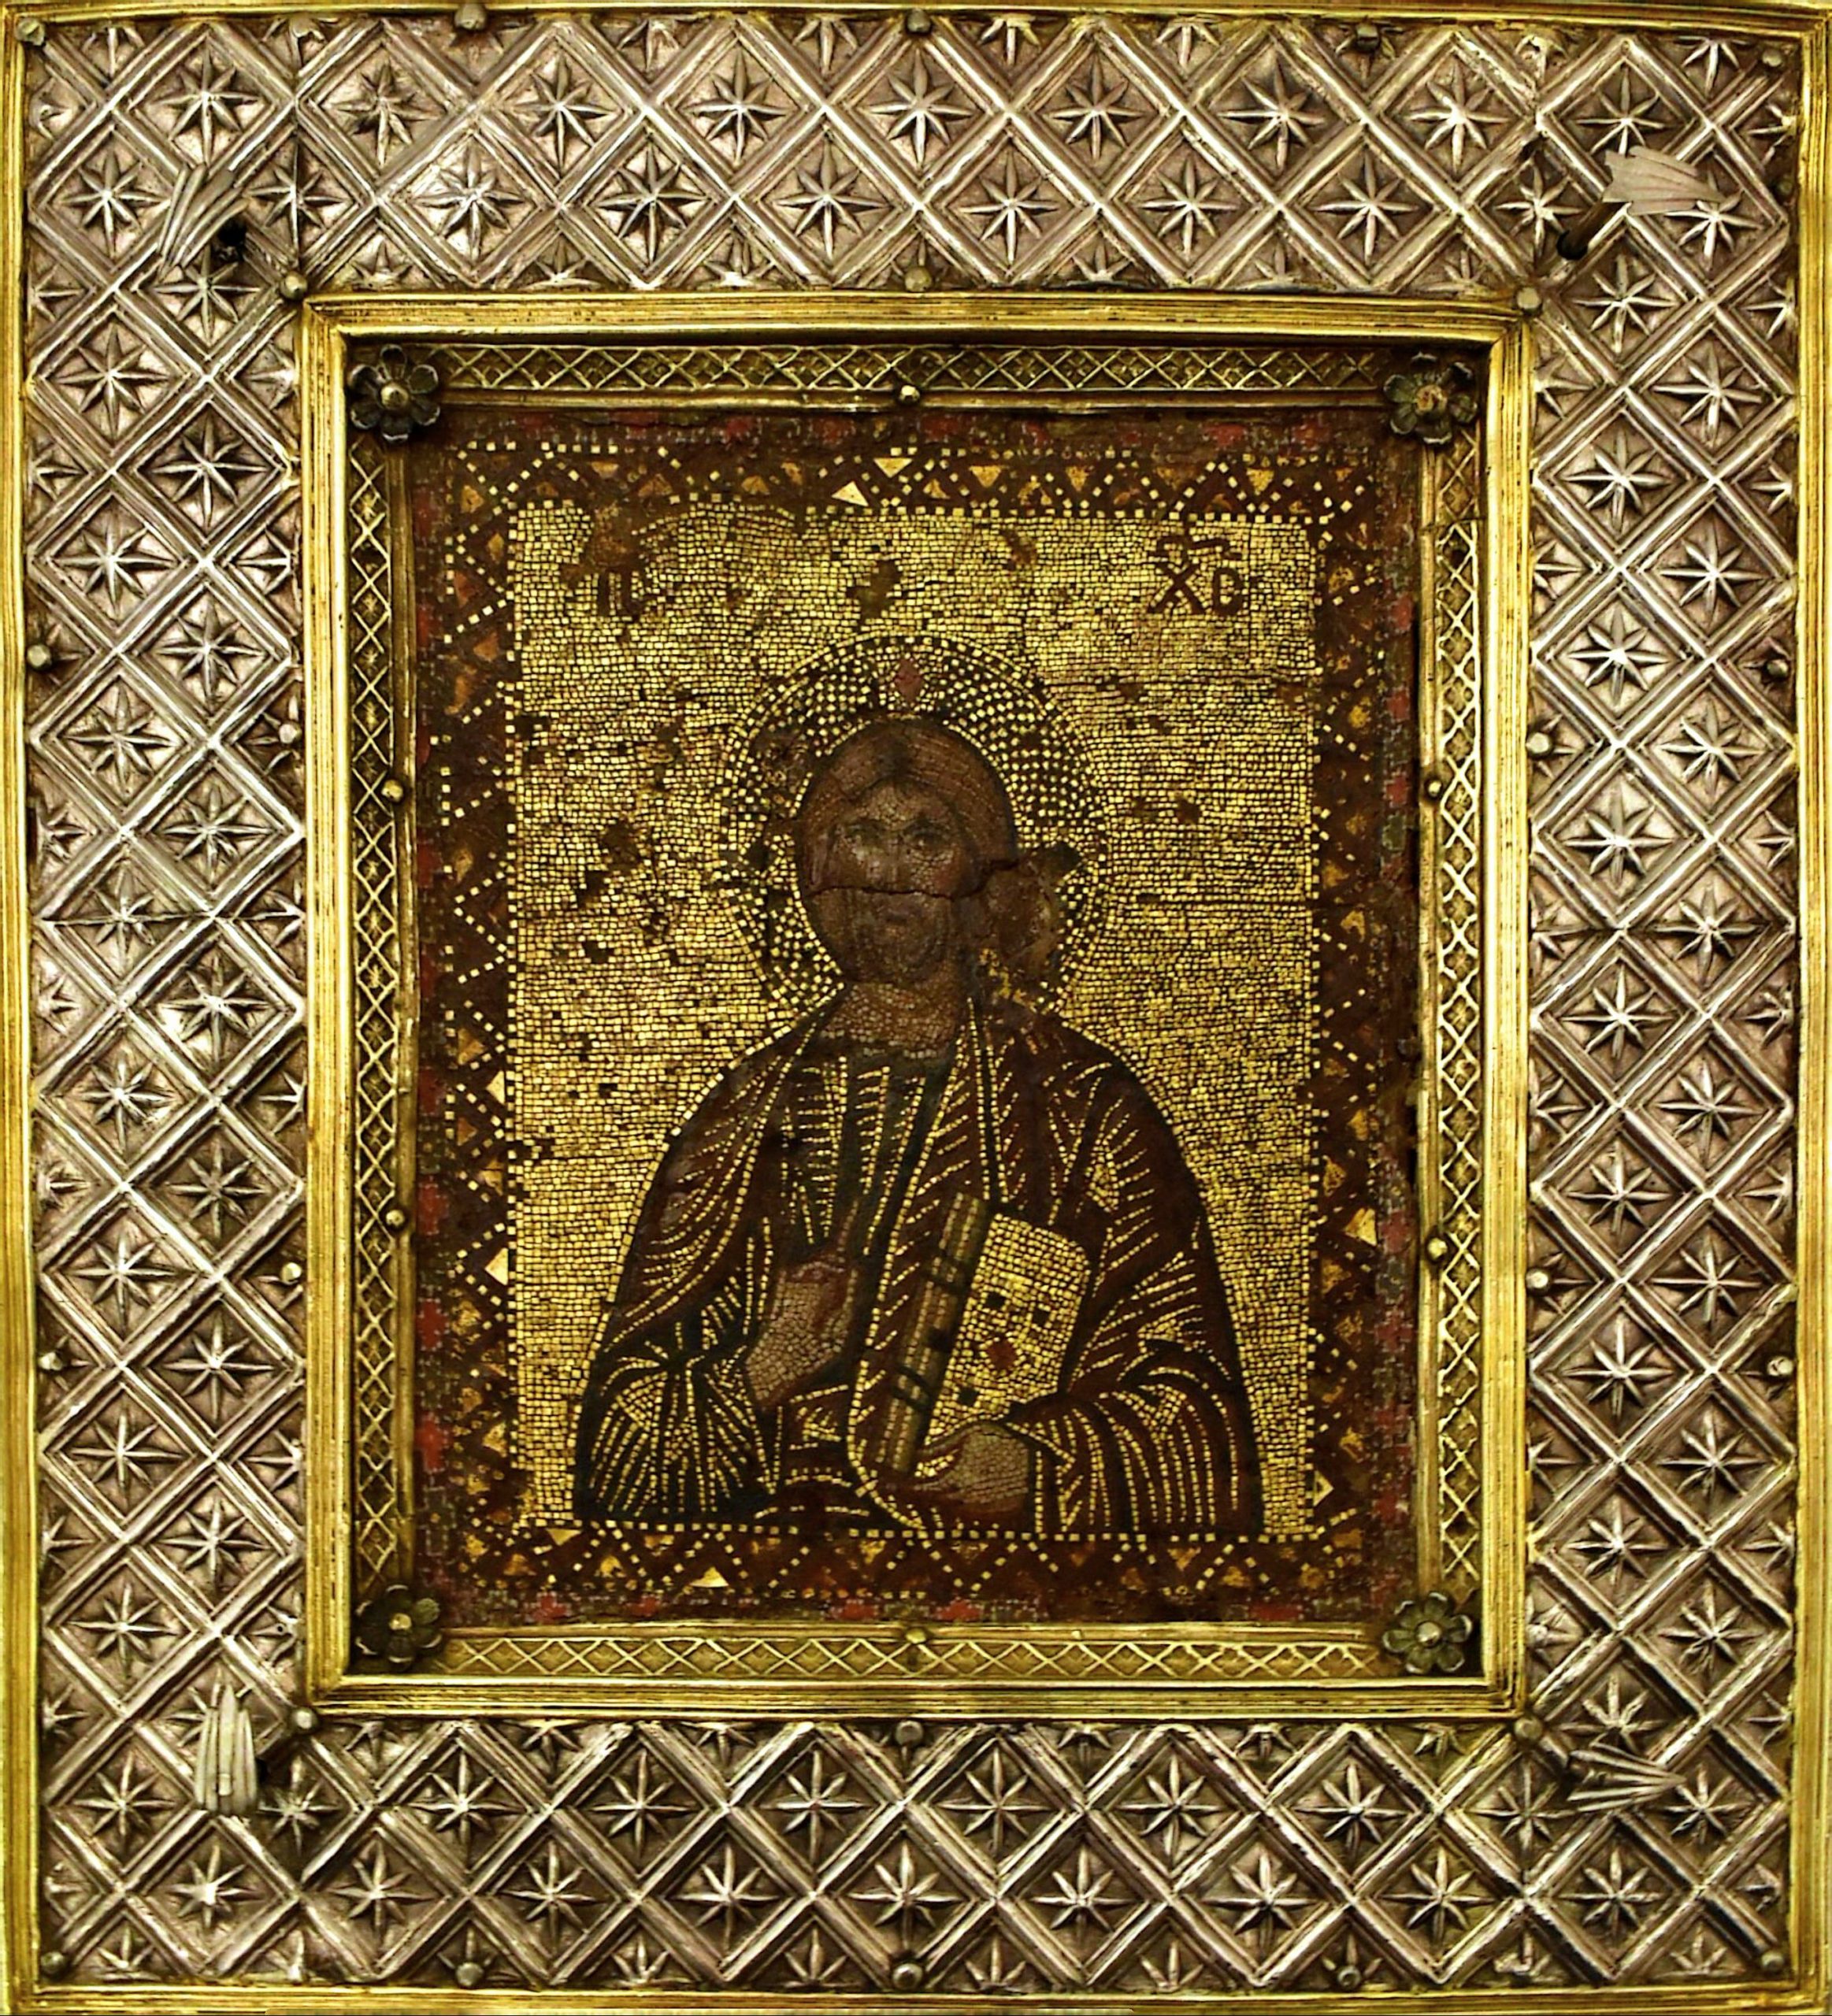 Figure 2: Icône de Chimay, vers 1300-1350, Chimay, Trésor de la collégiale Saints-Pierre-et-Paul (© Yvan Svantner)